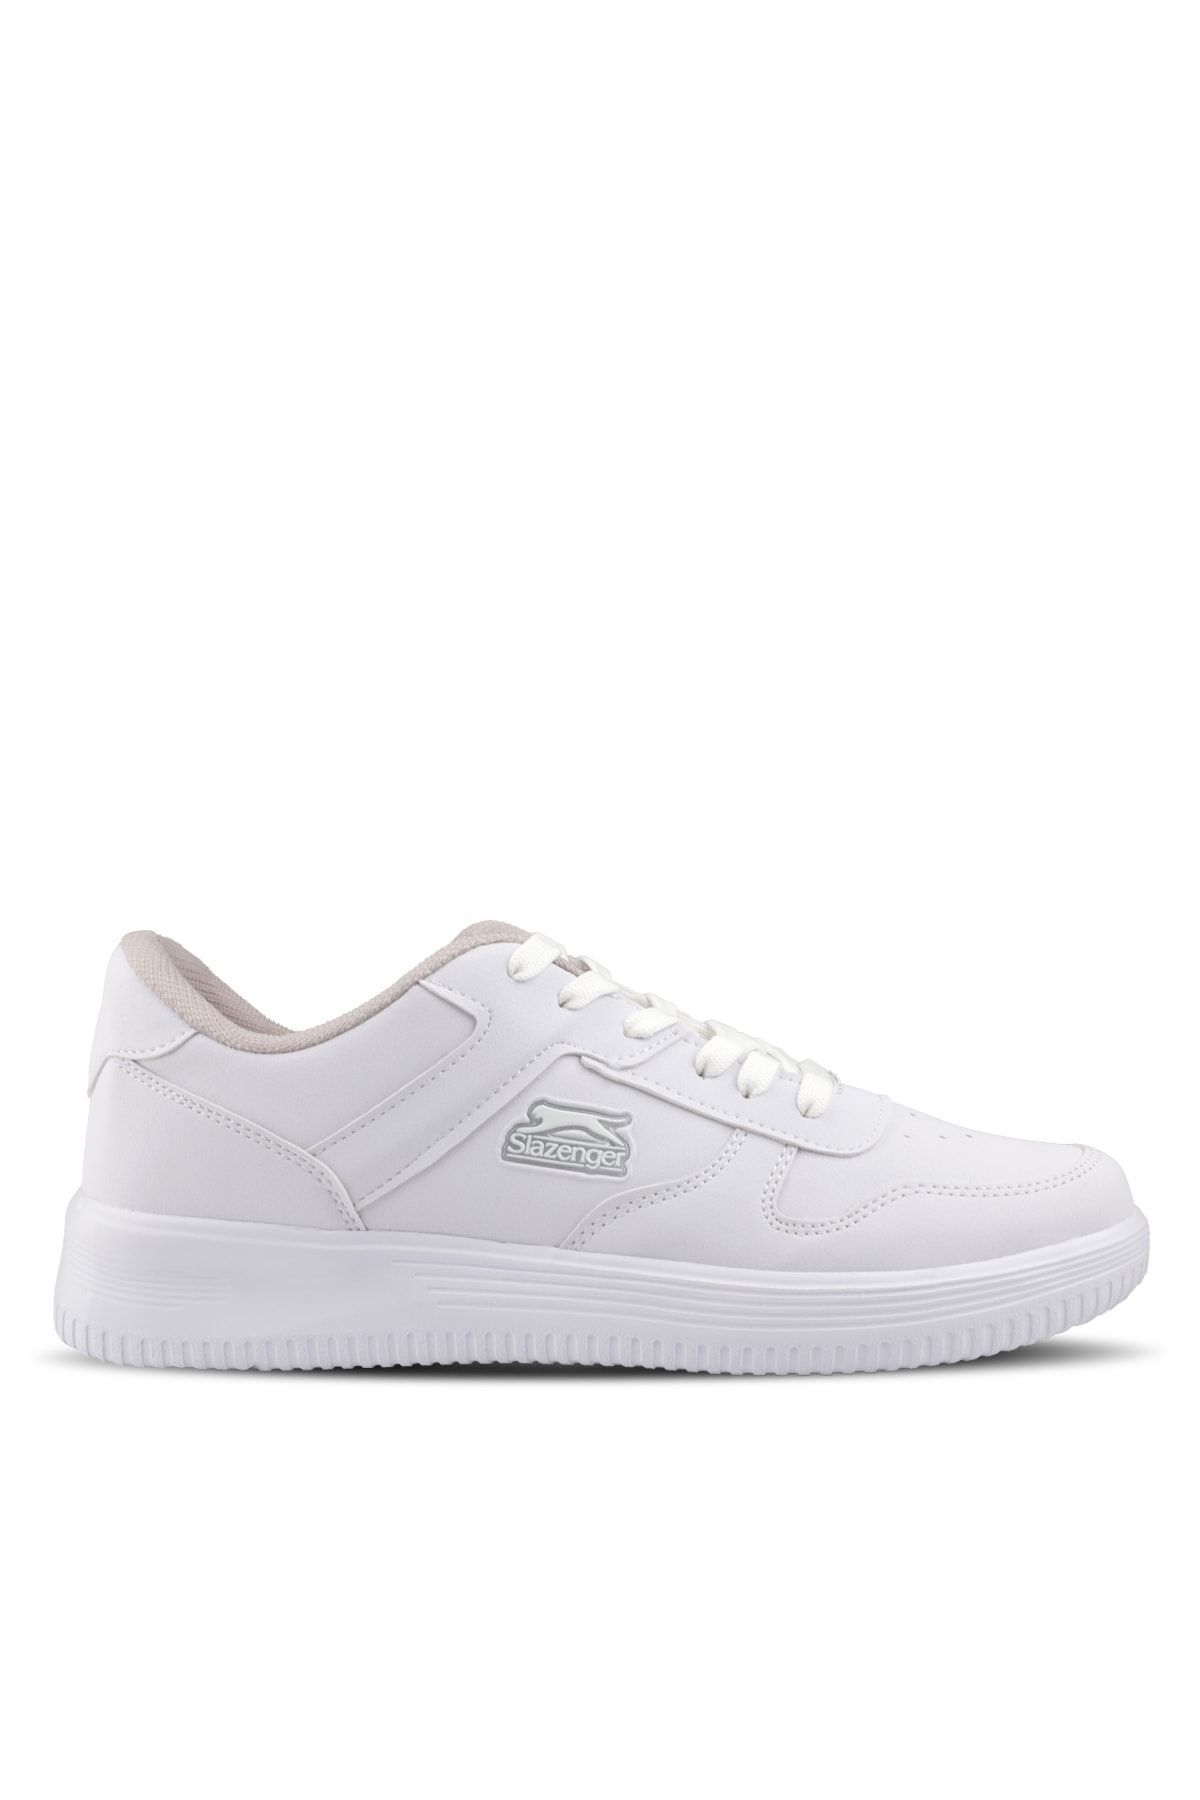 Slazenger Elıora I Sneaker Erkek Ayakkabı Beyaz